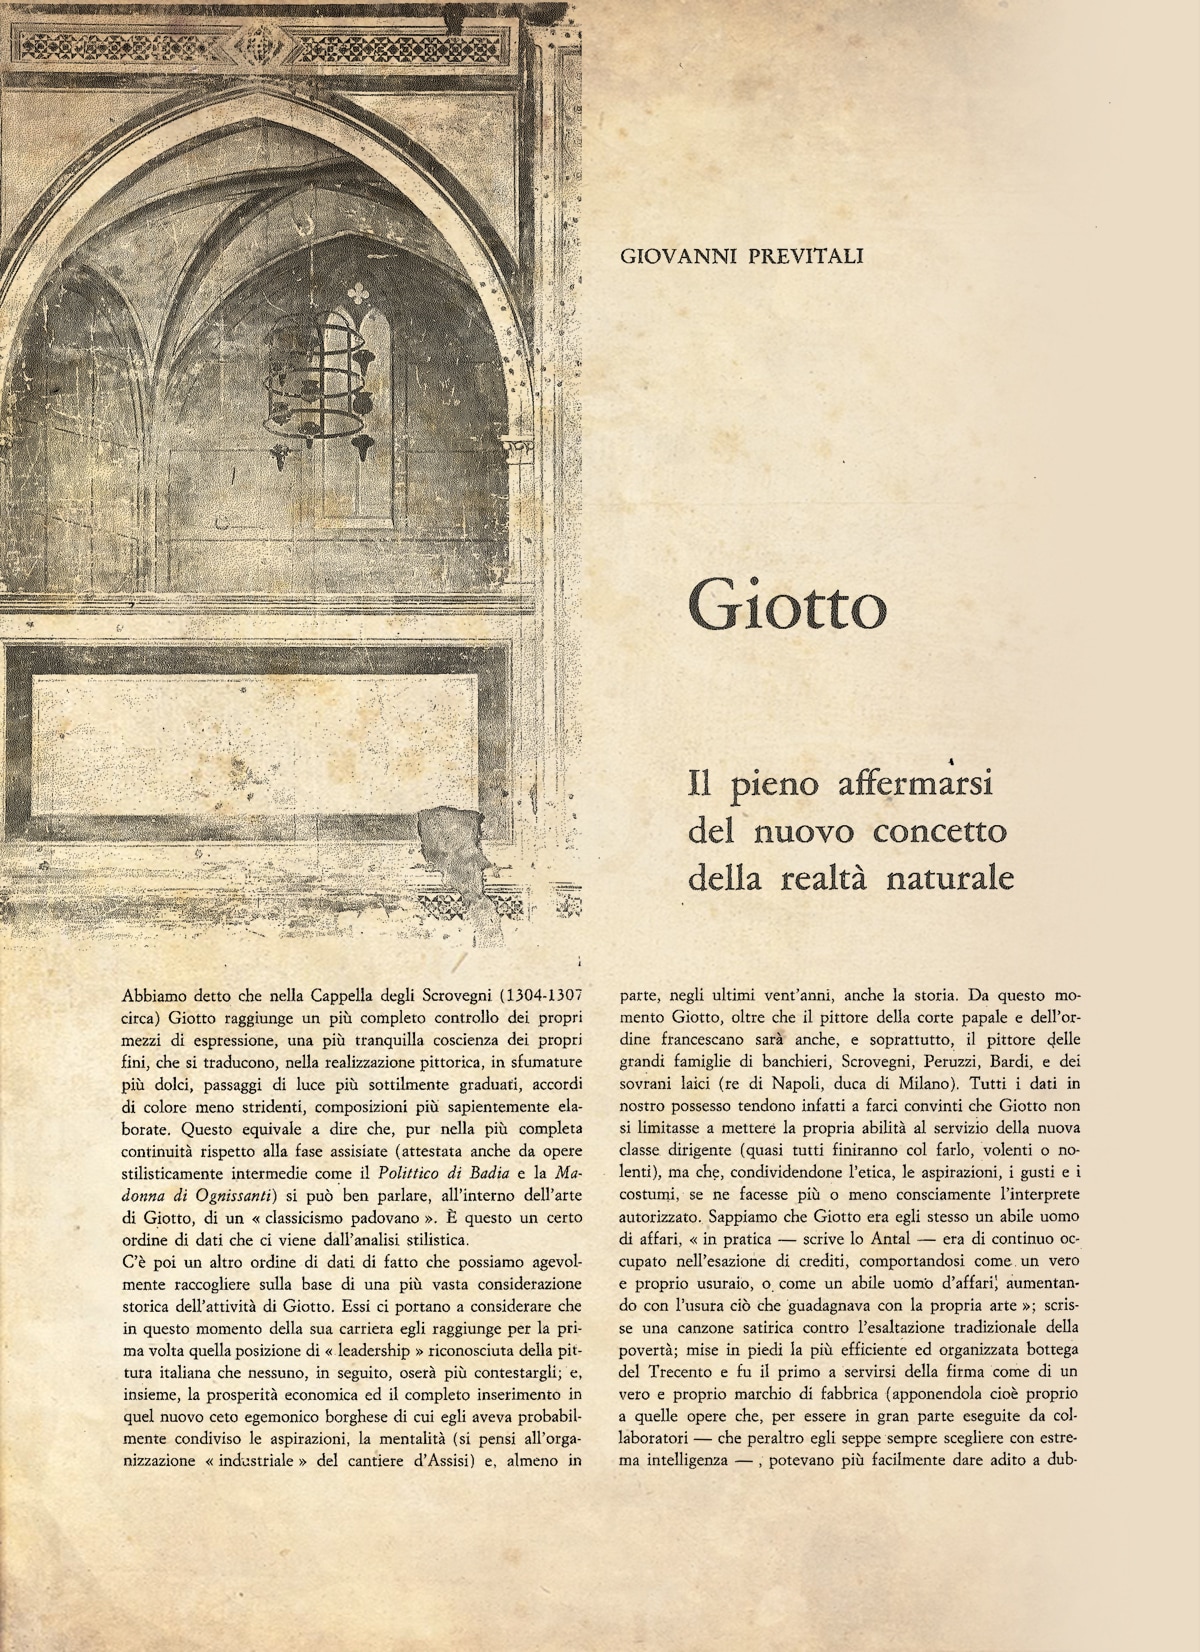 Giotto di Giovanni Previtali